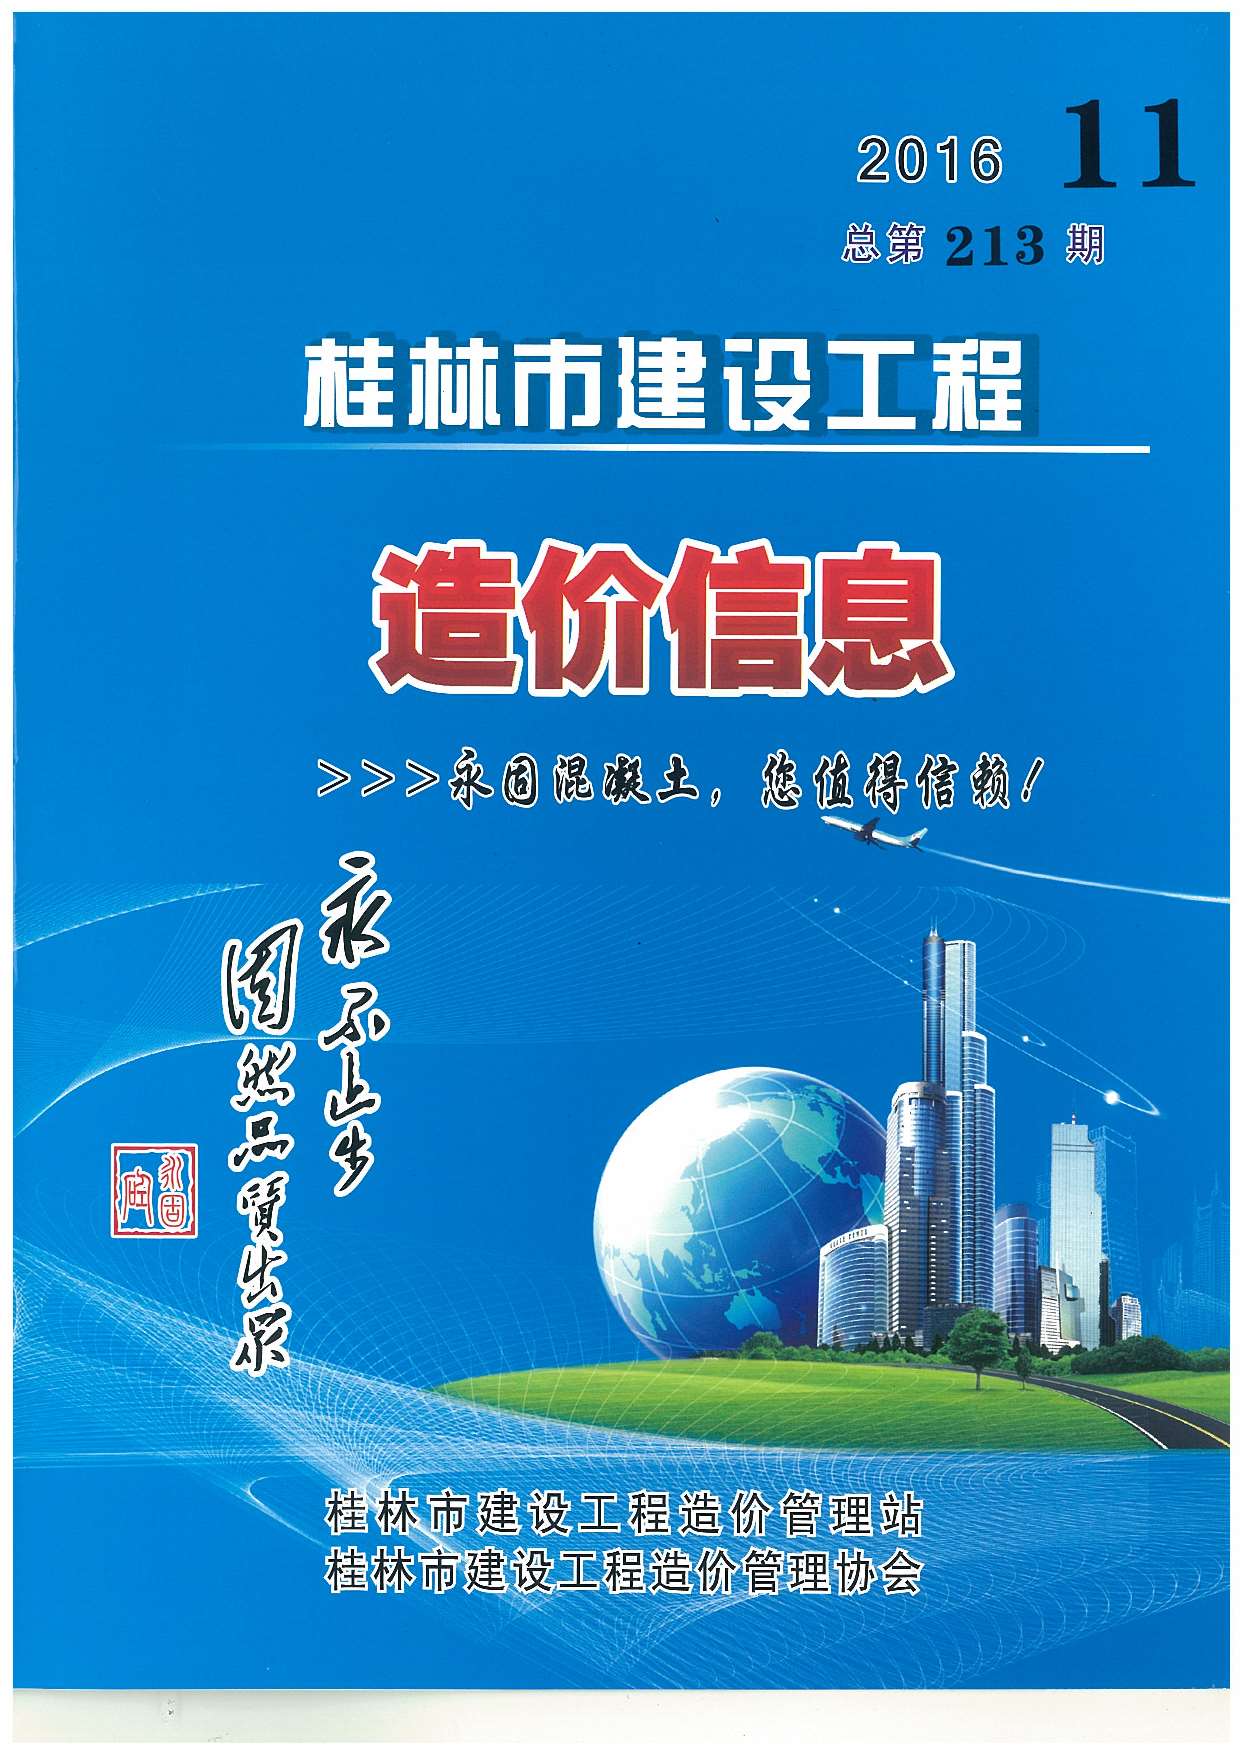 桂林市2016年11月建设工程造价信息